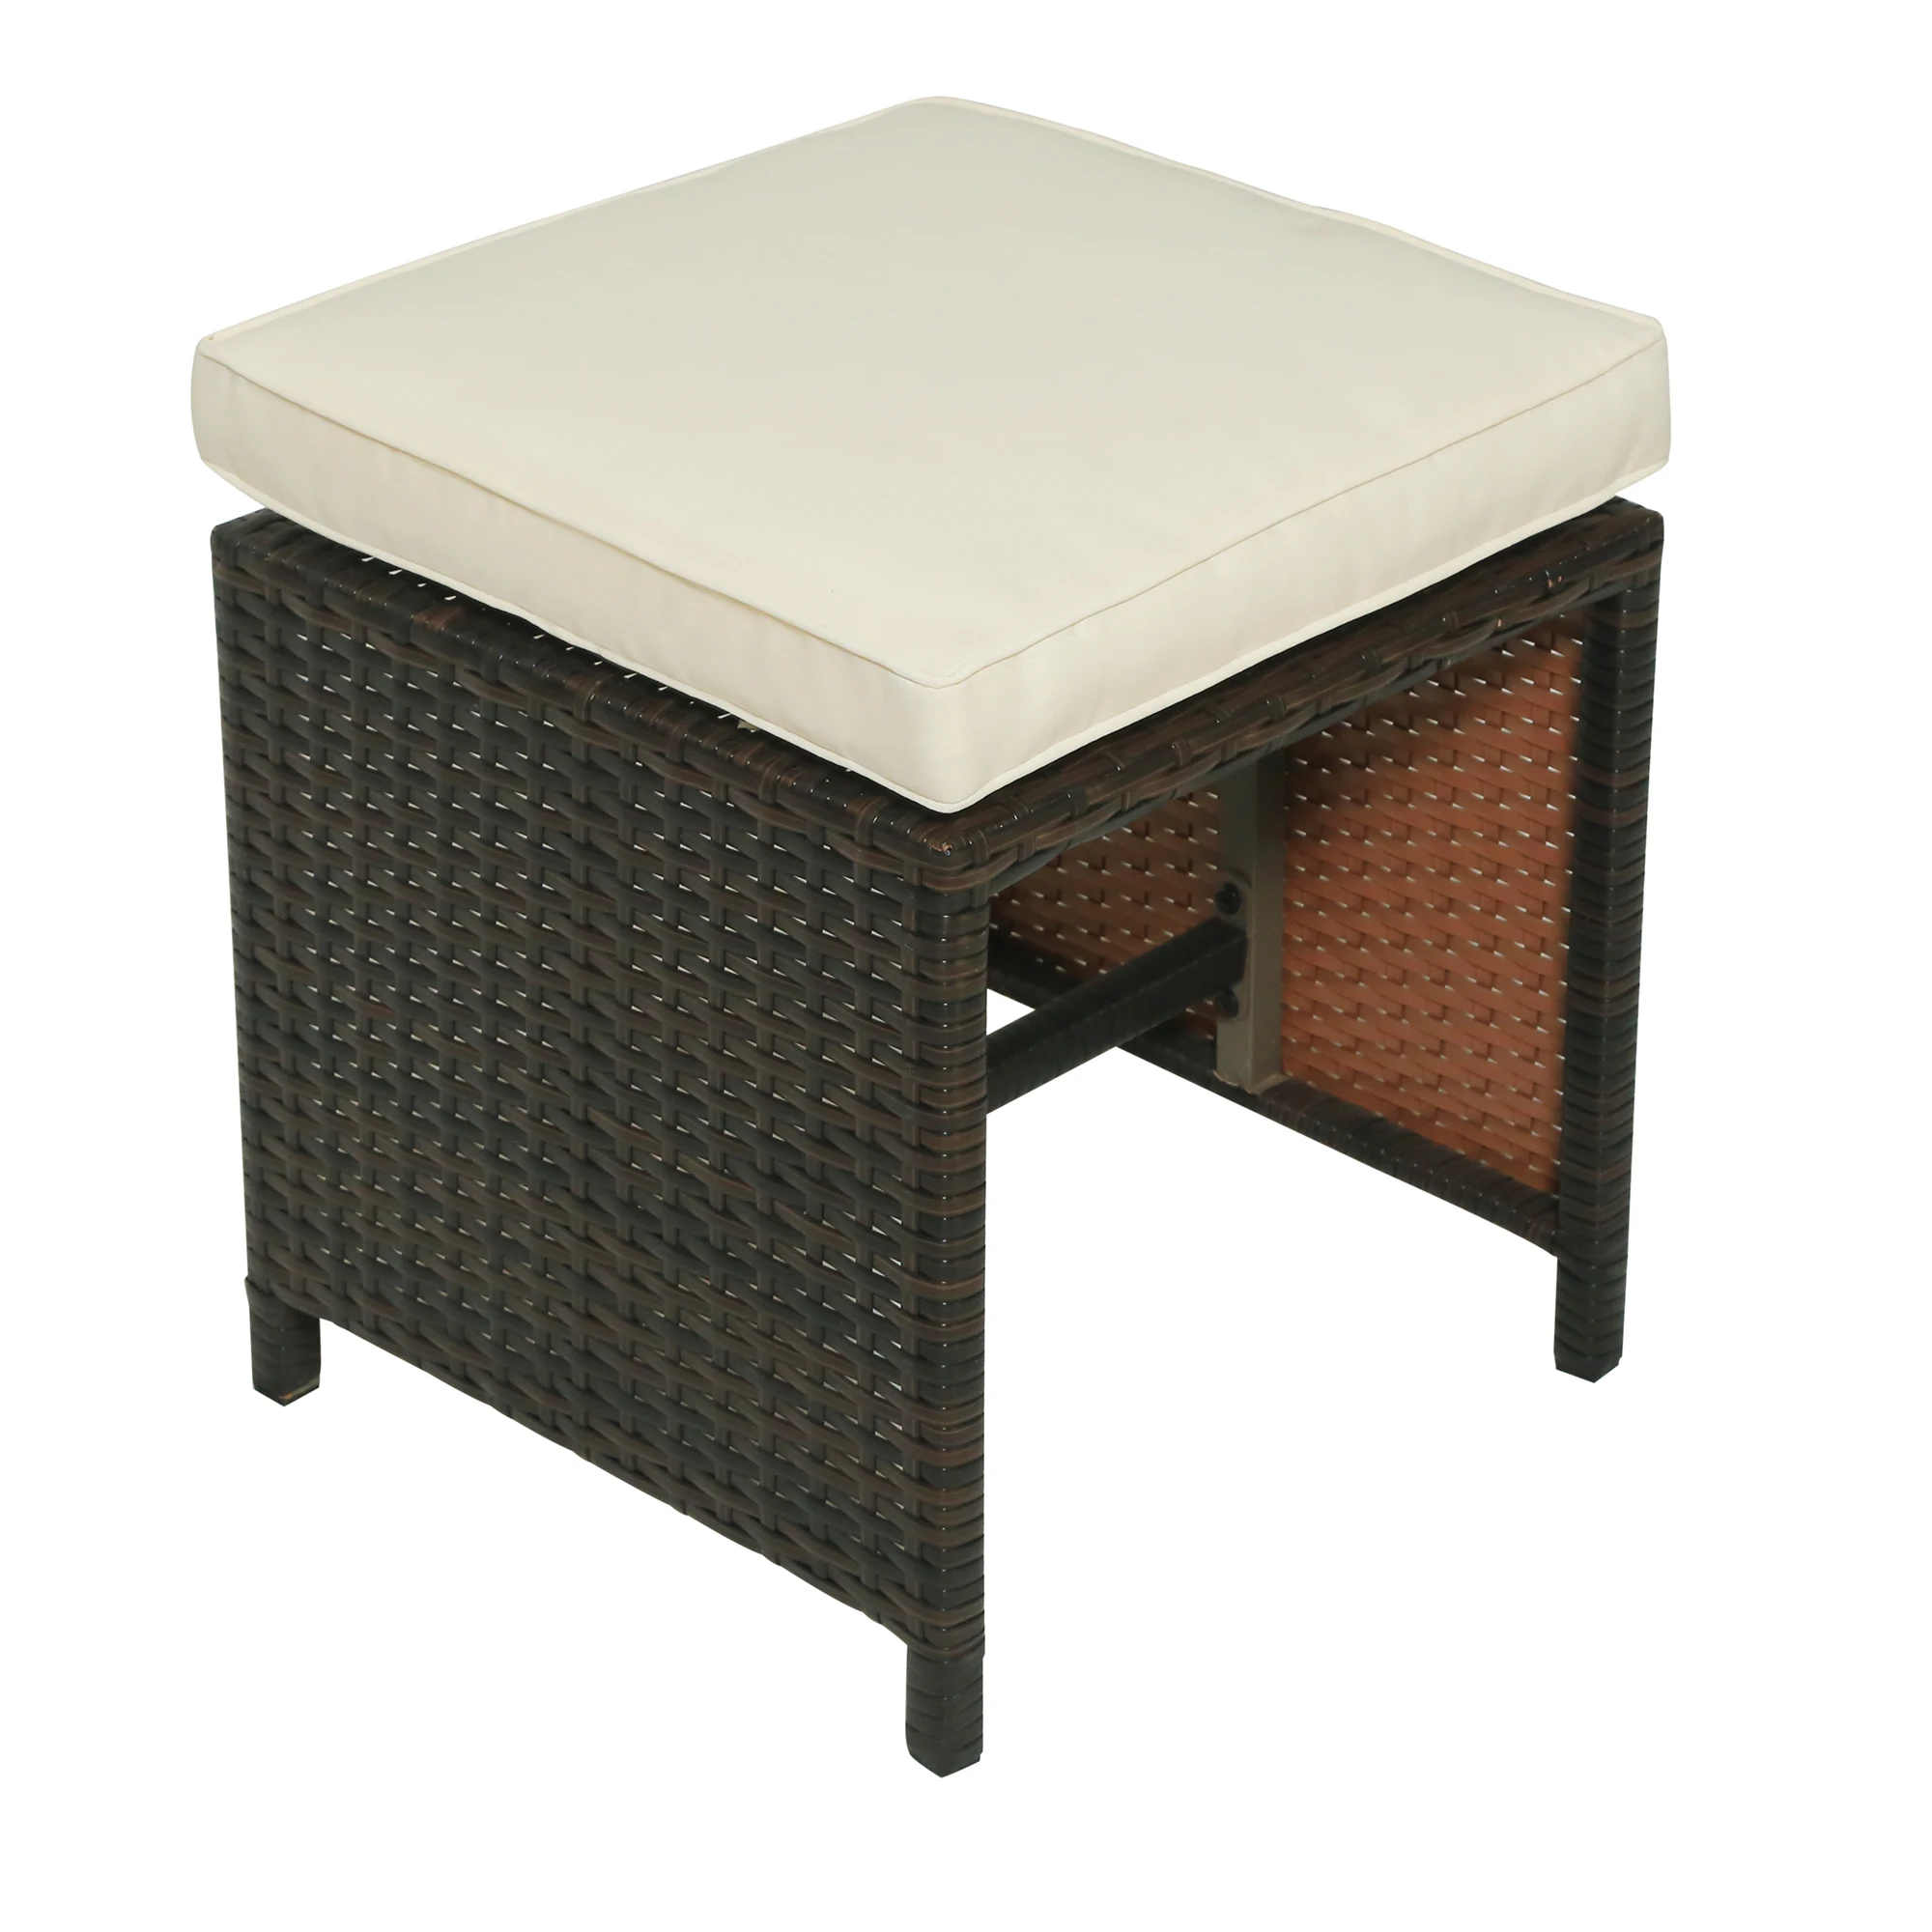 11 предметов уличная ротанговая плетеная патио обеденный стол сада патио мебель наборы (11 шт.)